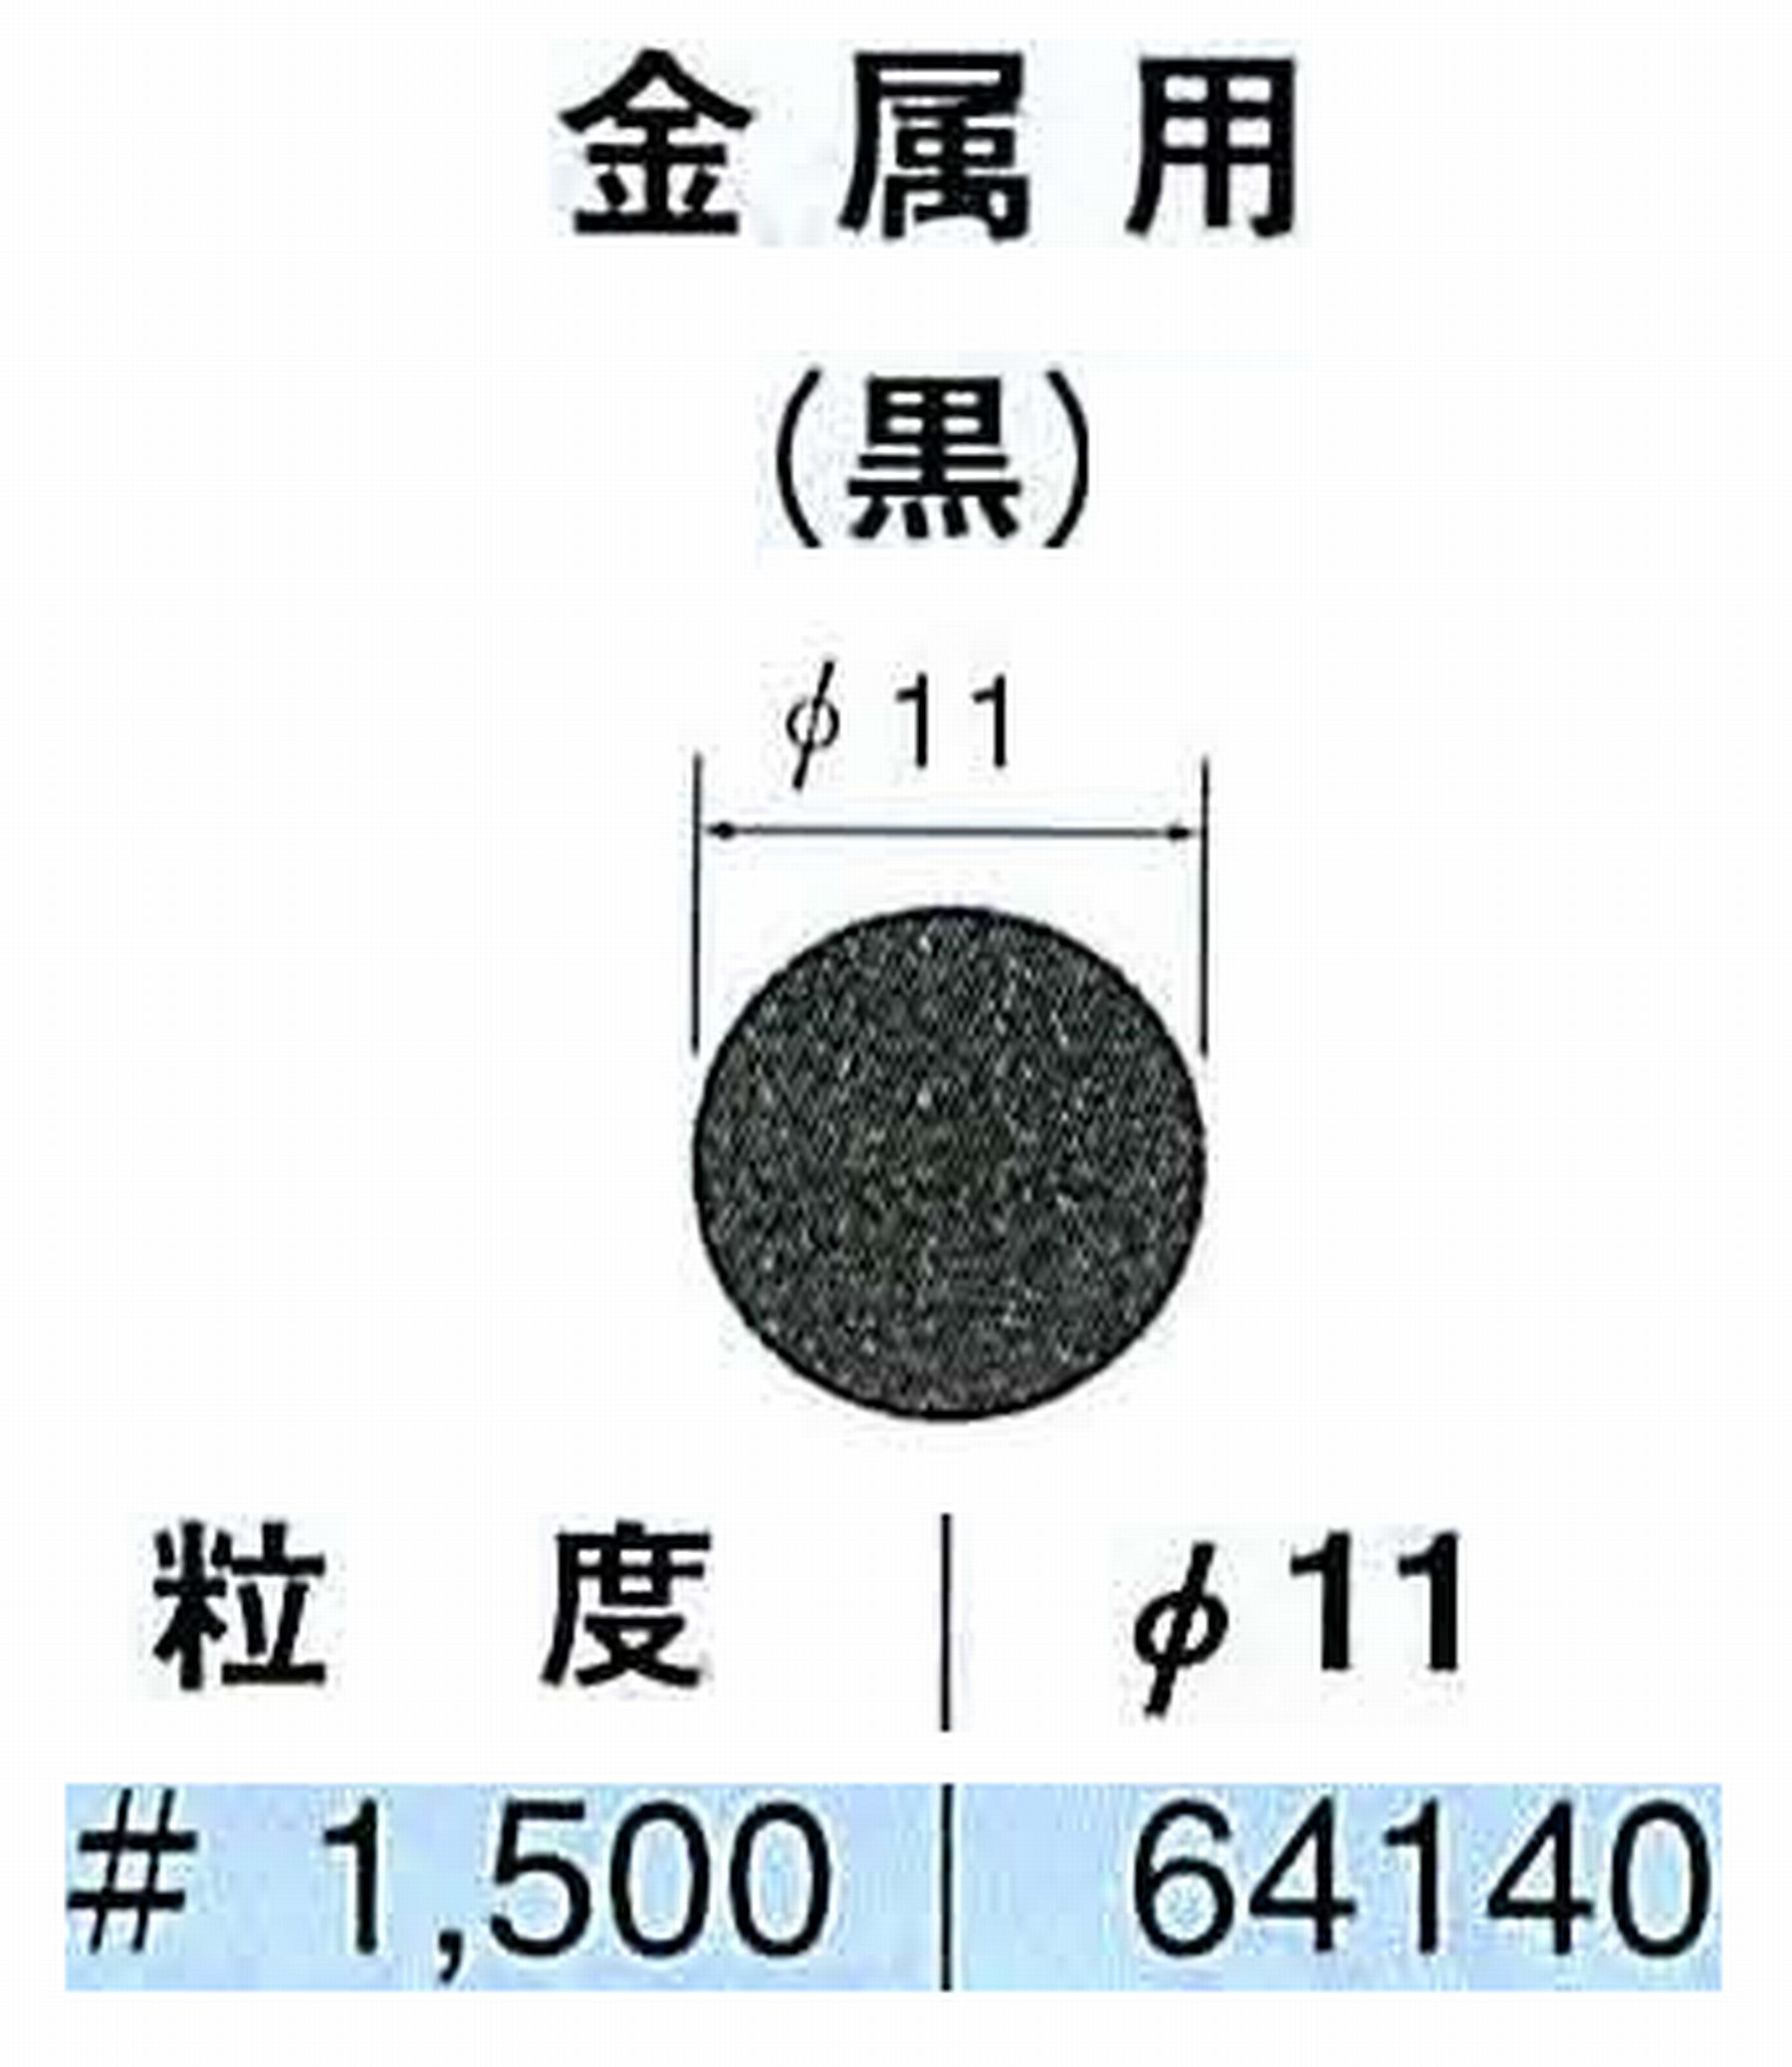 ナカニシ/NAKANISHI アングルグラインダ(電動・エアー) アングルアタッチメント専用工具 サンドペーパーディスク(紙基材タイプ)裏面のり処理 64140